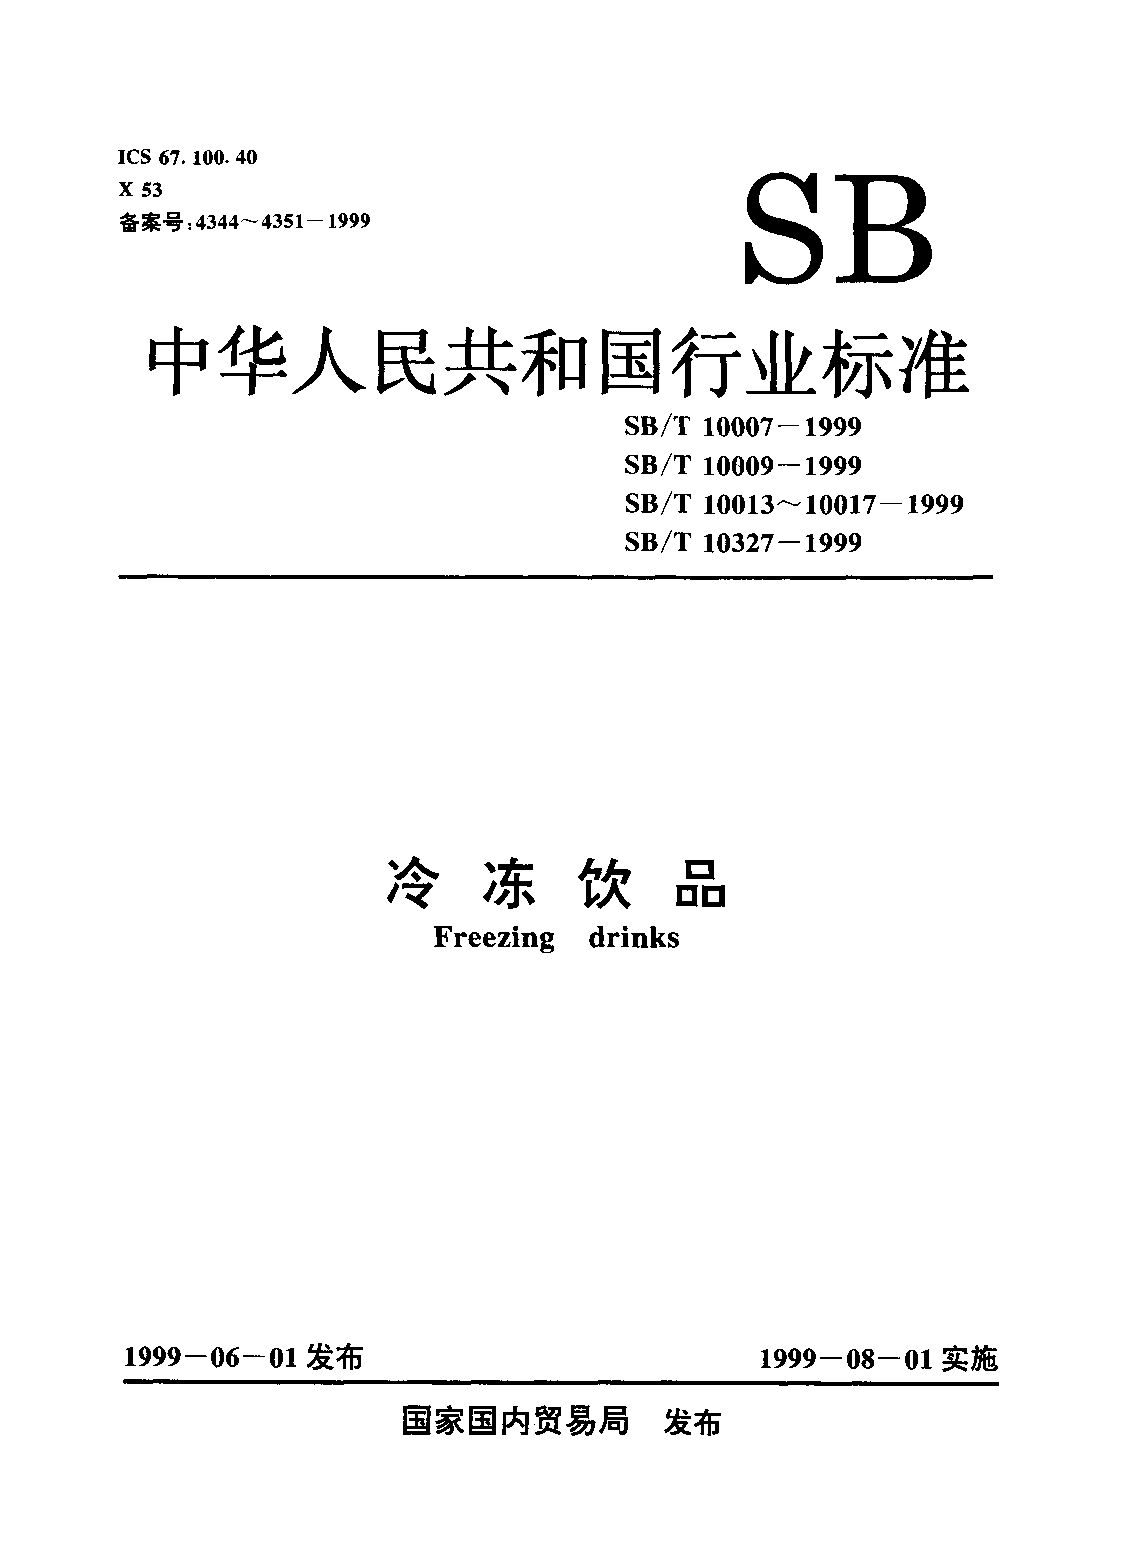 SB/T 10017-1999封面图